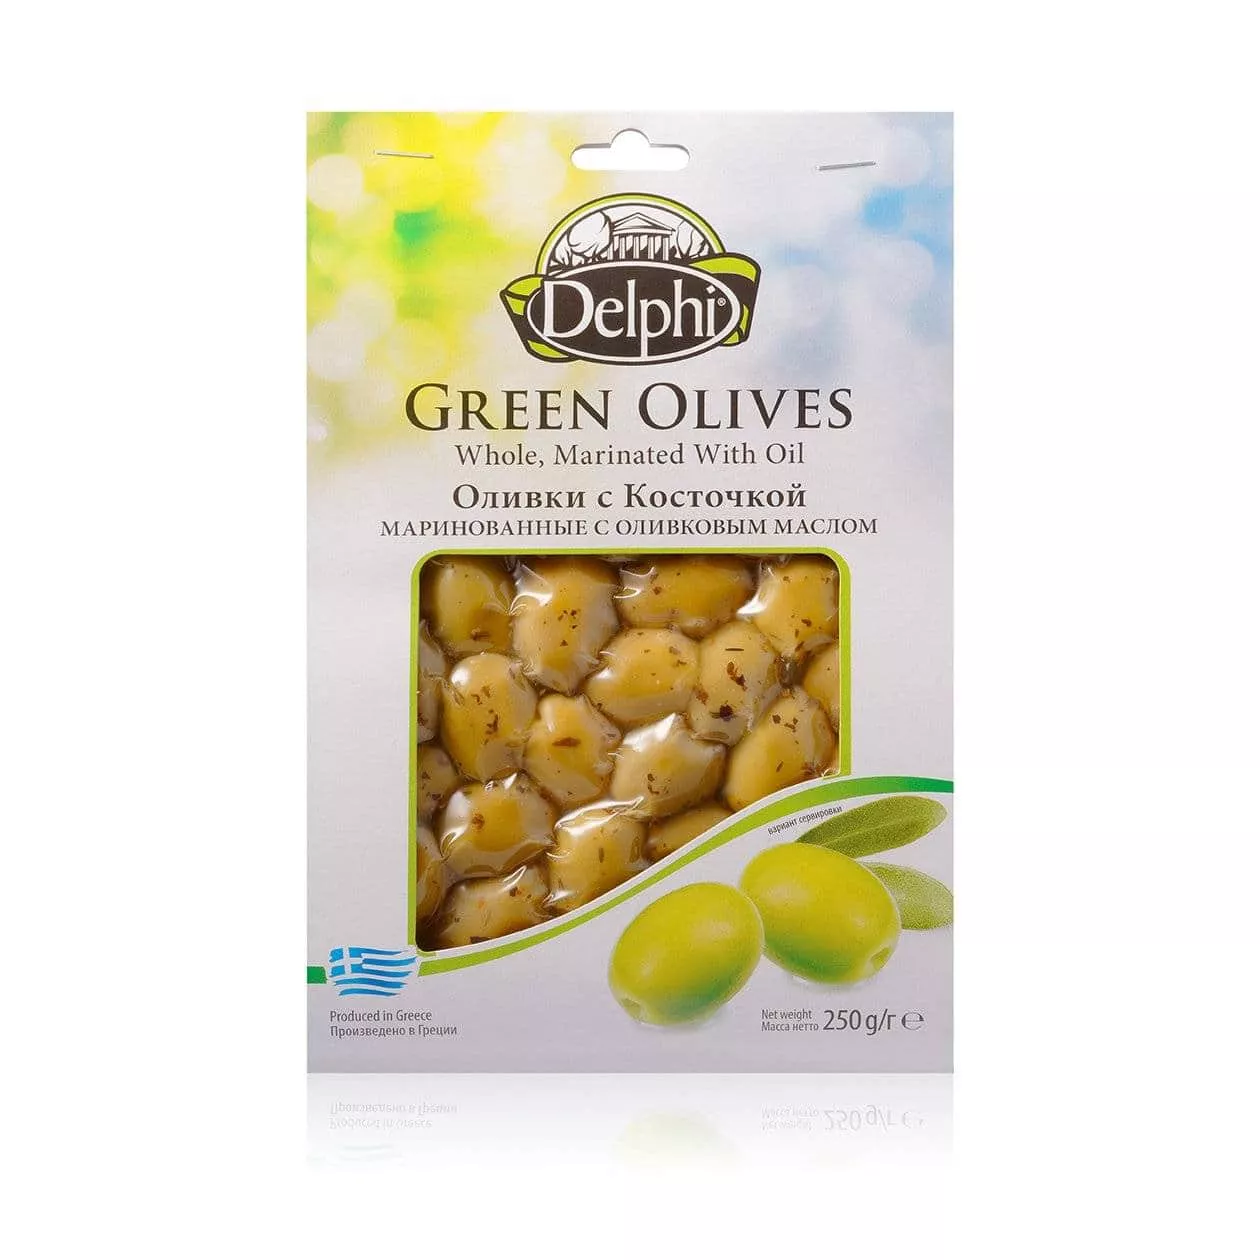 Оливки с косточкой маринованные, с оливковым маслом, DELPHI 250г